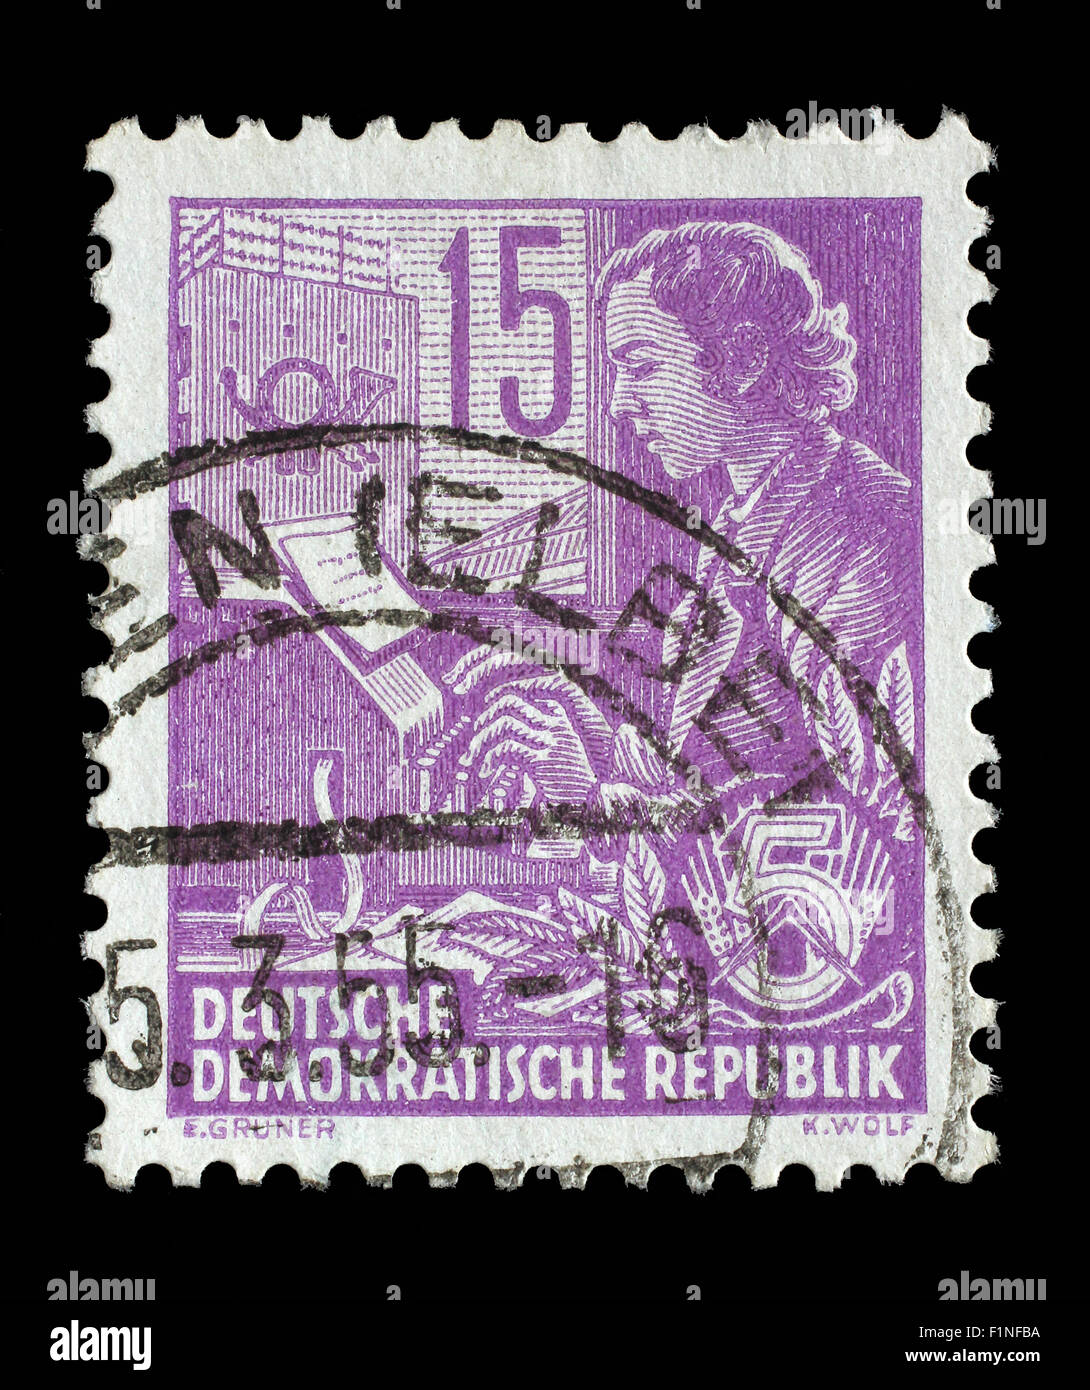 Briefmarke gedruckt in DDR (Deutsche Demokratische Republik - DDR) zeigt eine Frau auf die Teletype, ca. 1953 Stockfoto